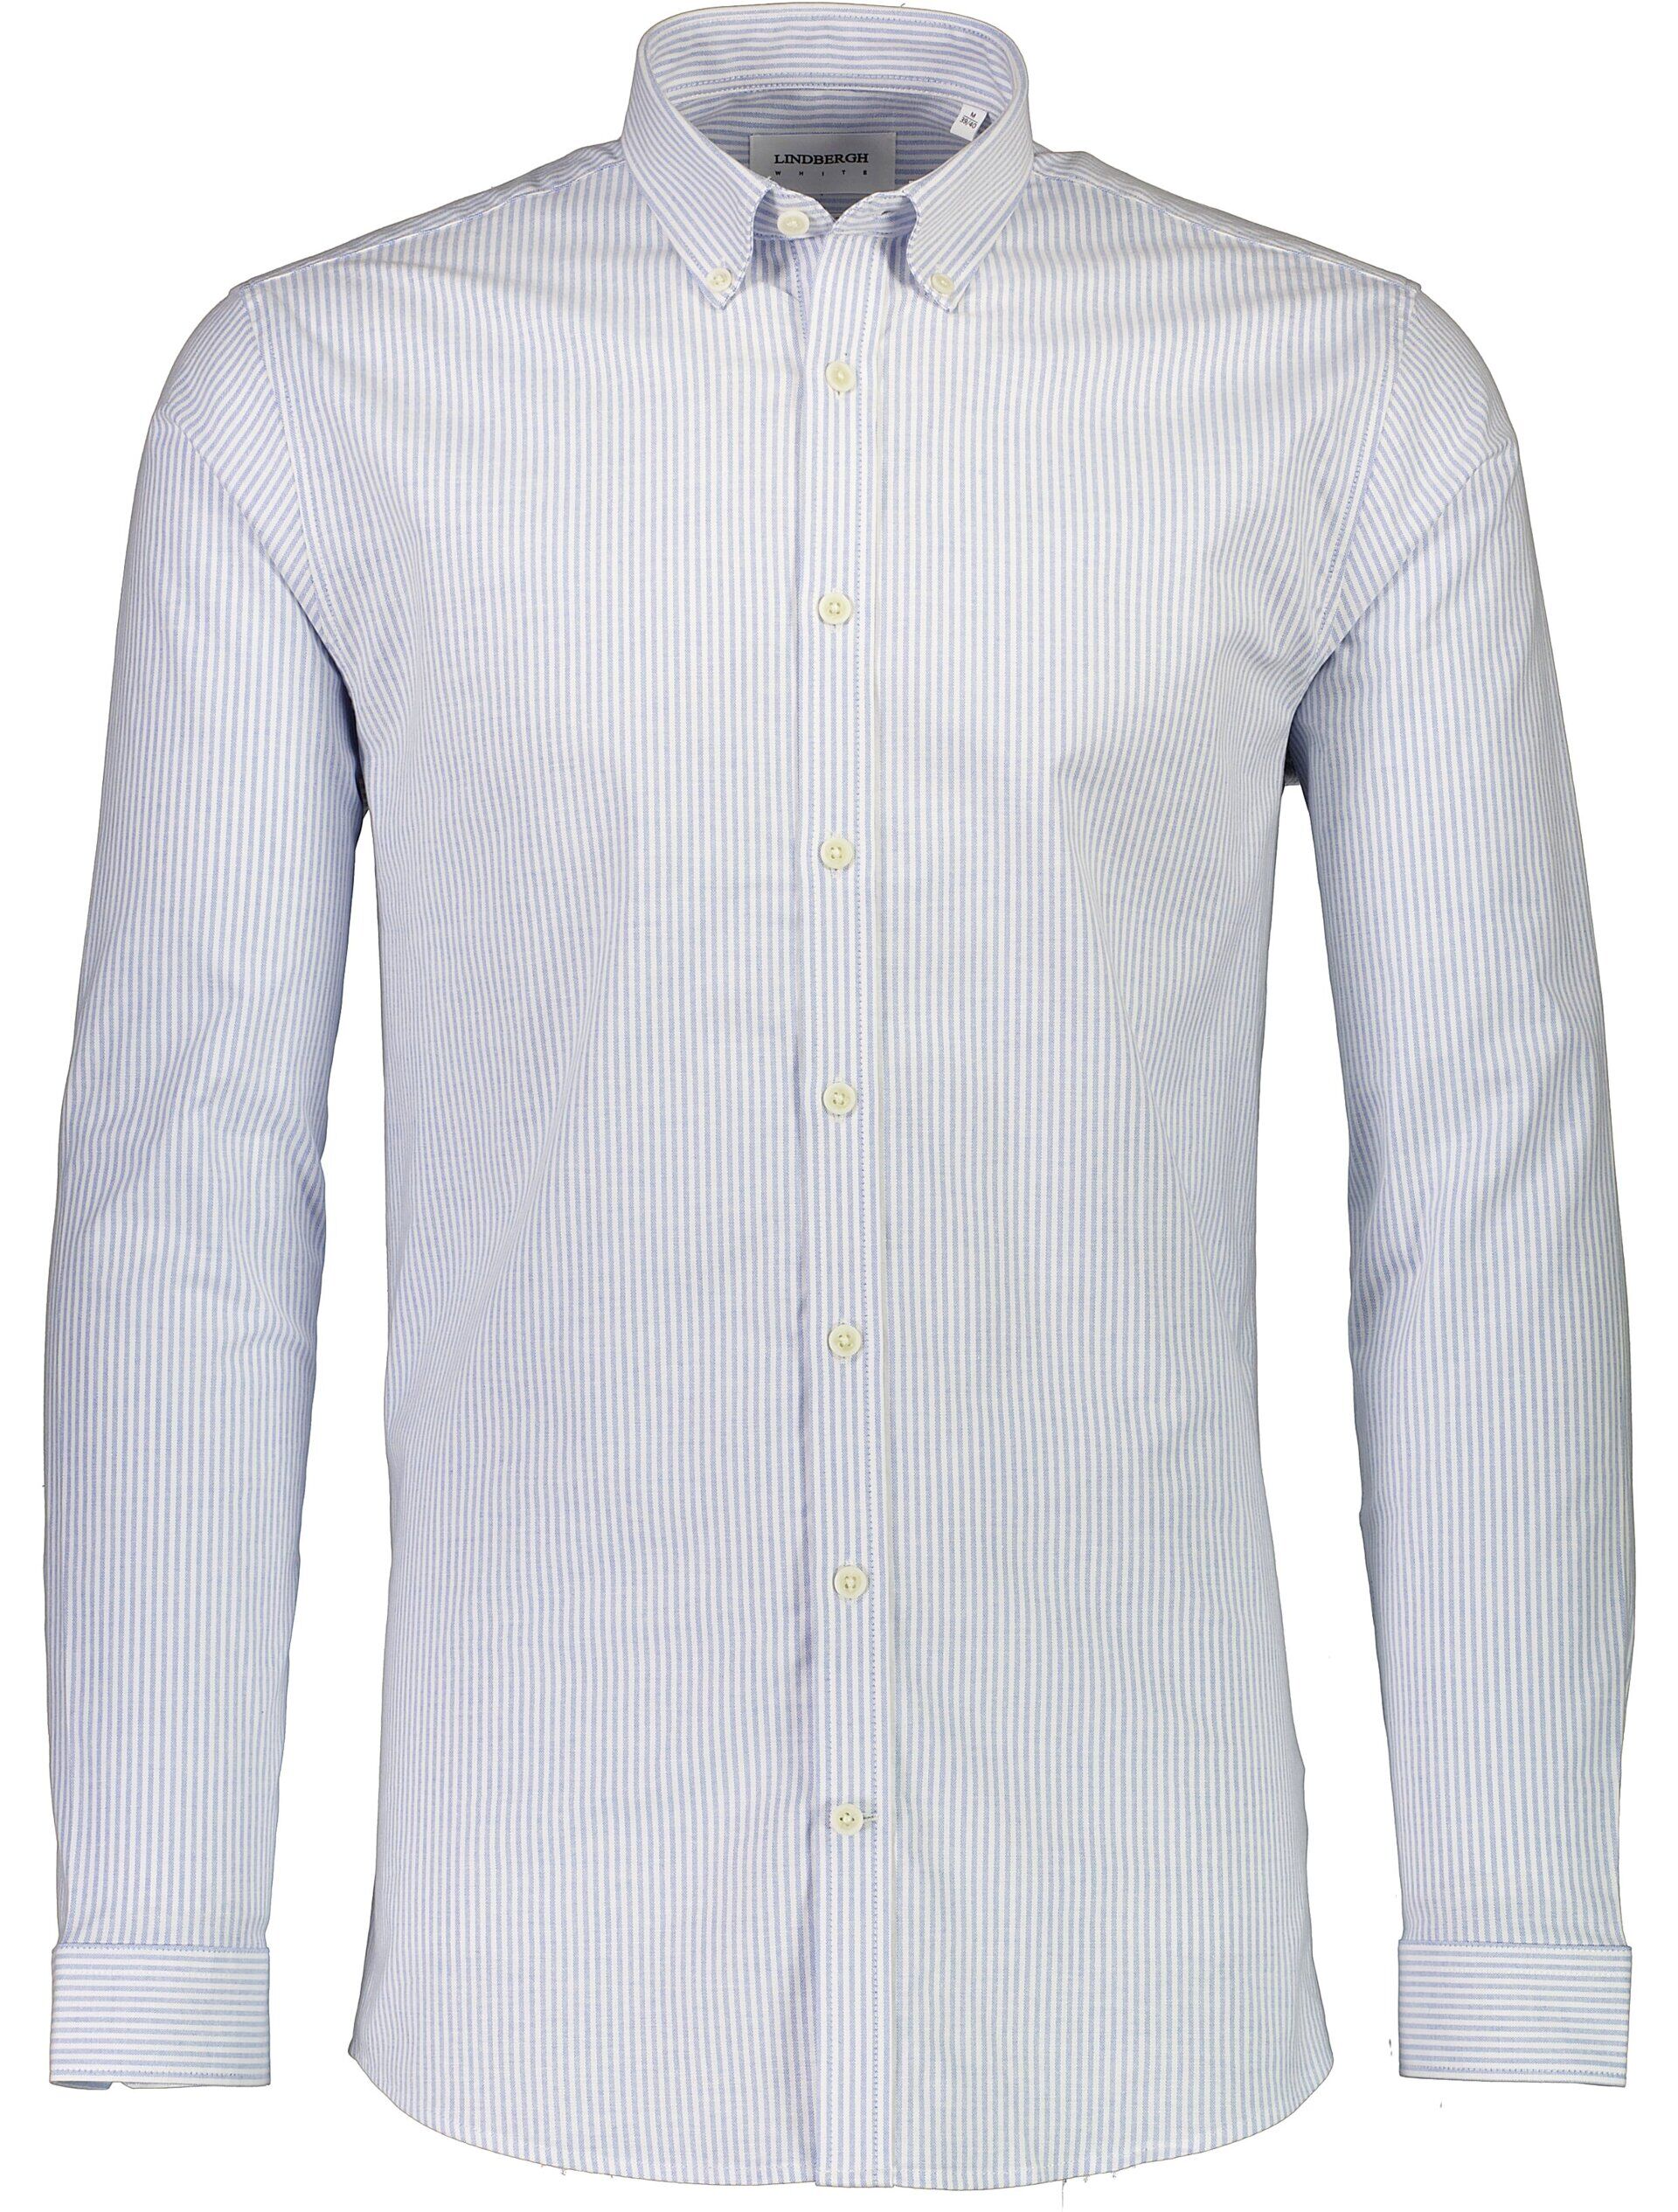 Oxfordskjorta Oxfordskjorta Blå 30-203296K